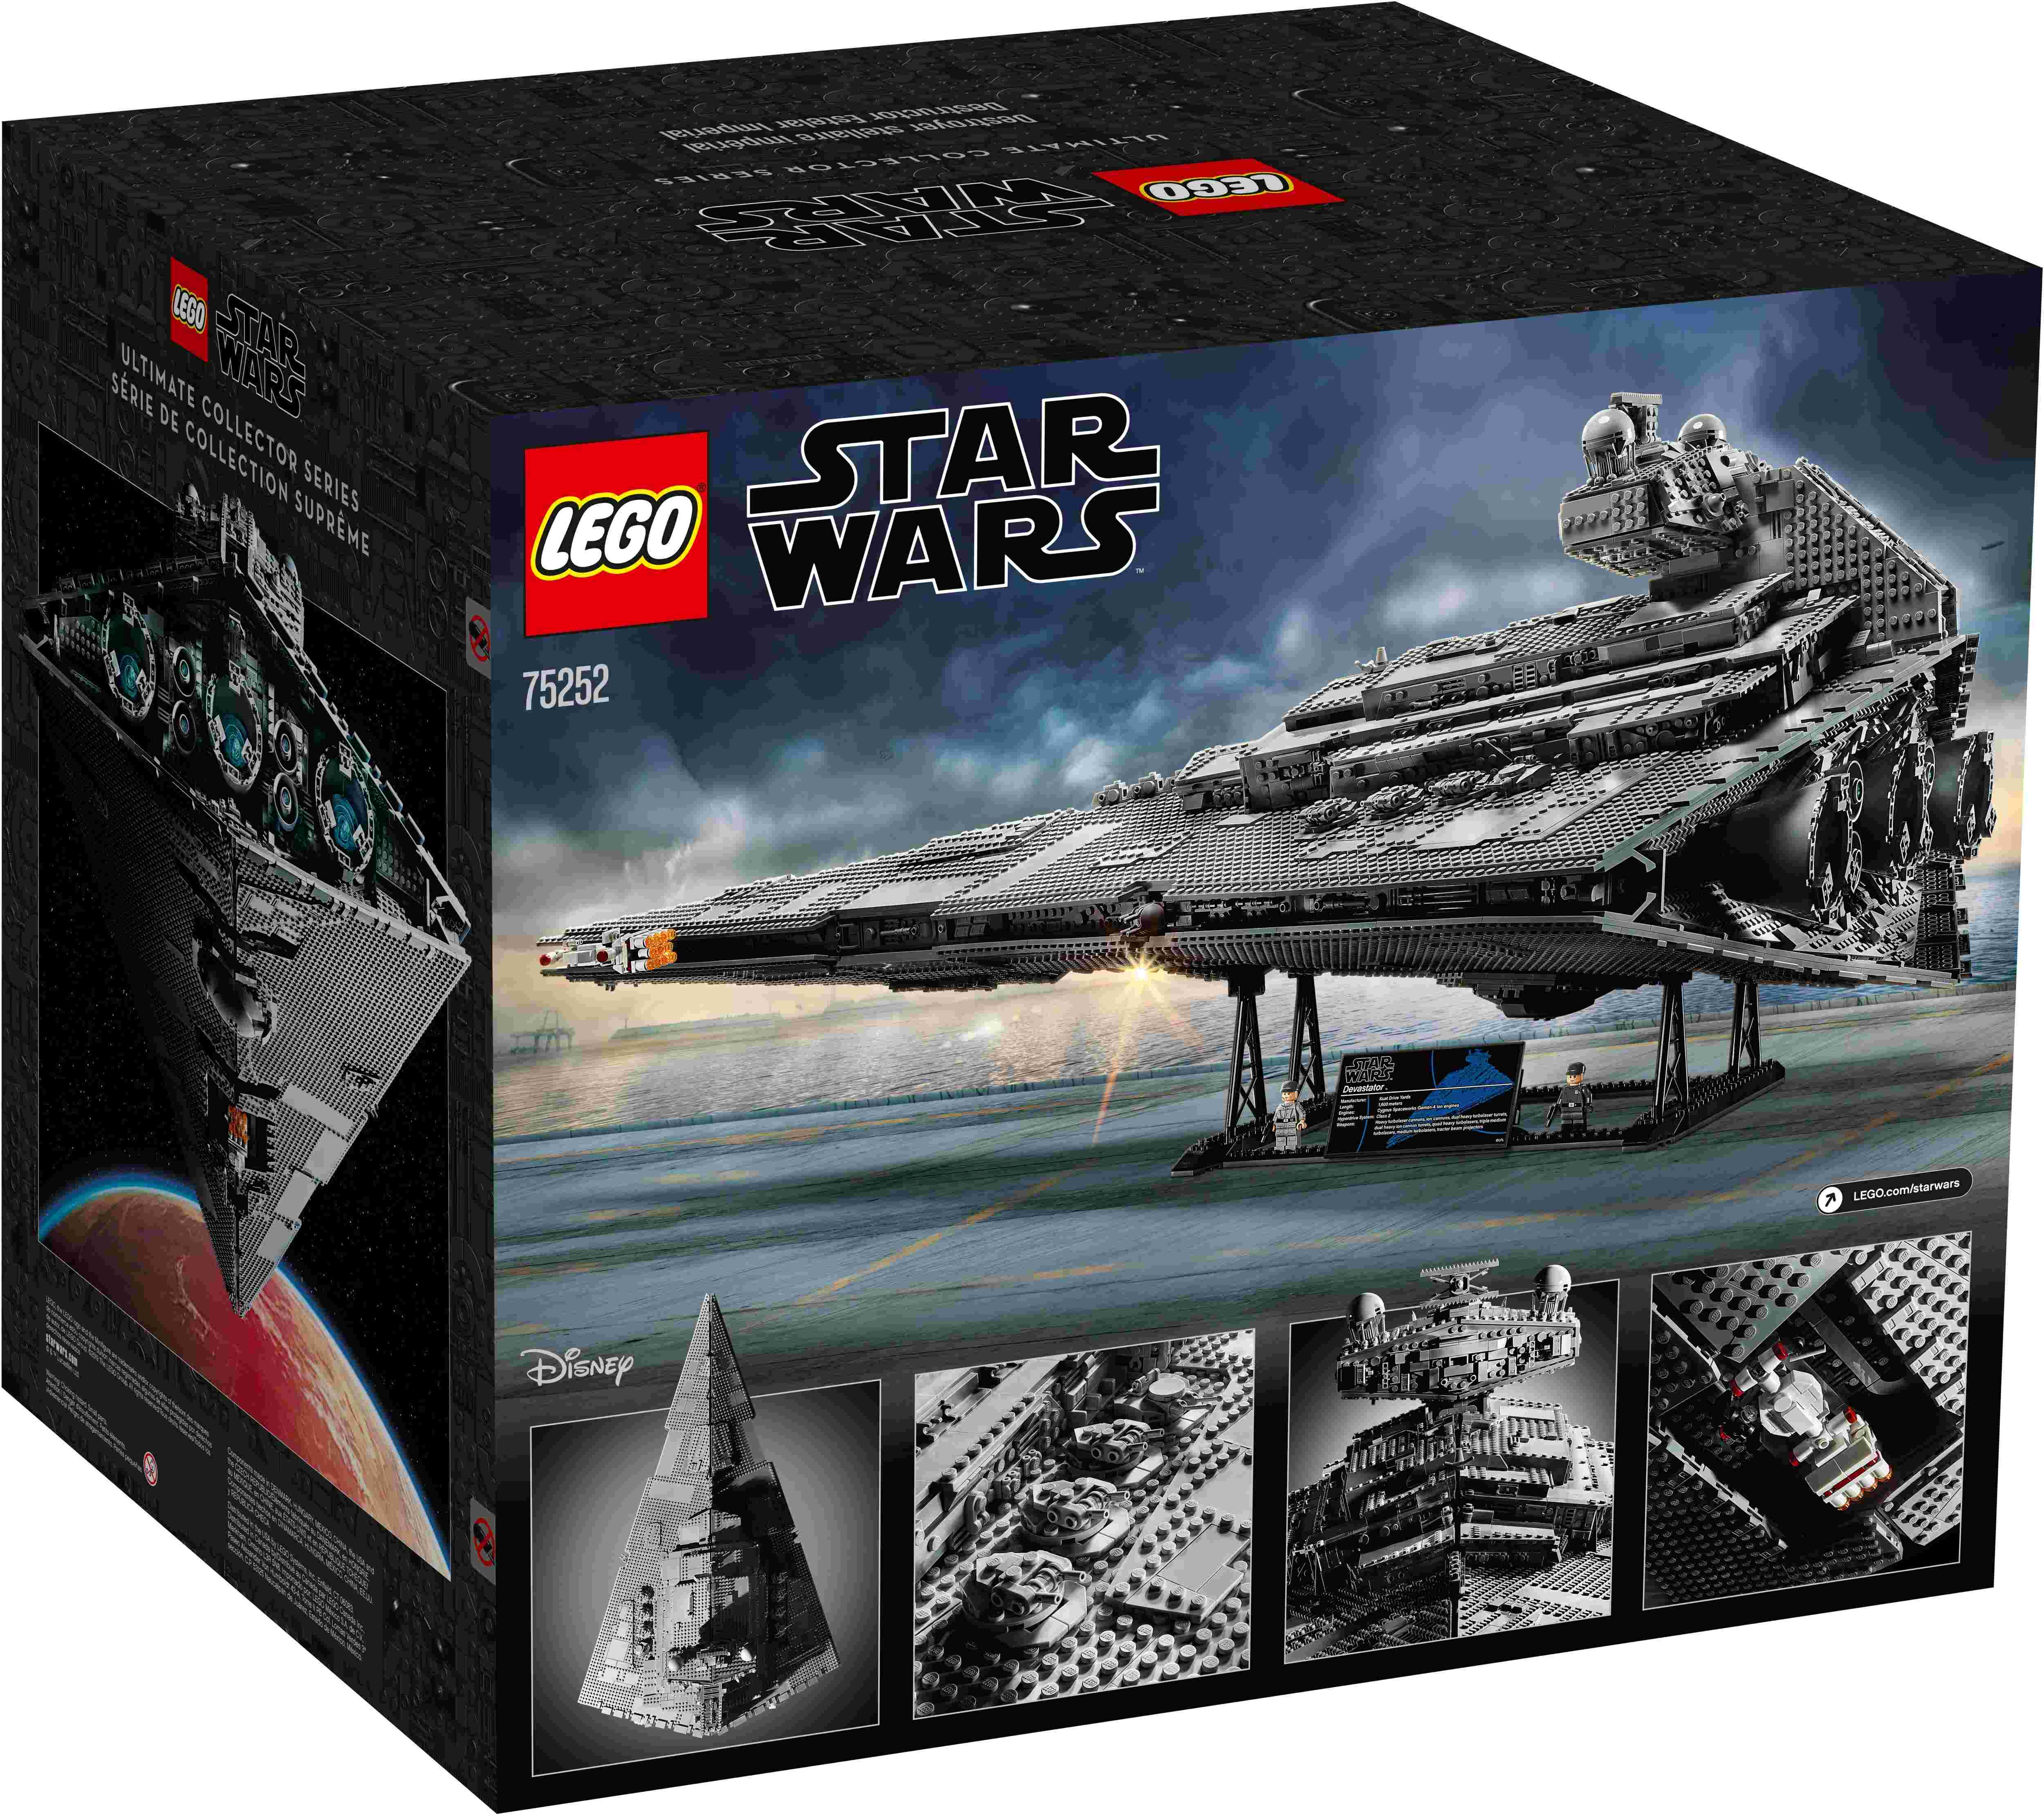 LEGO 75252 Star Wars Imperialer Sternzerstörer, 2 Minifiguren, Kultmodell